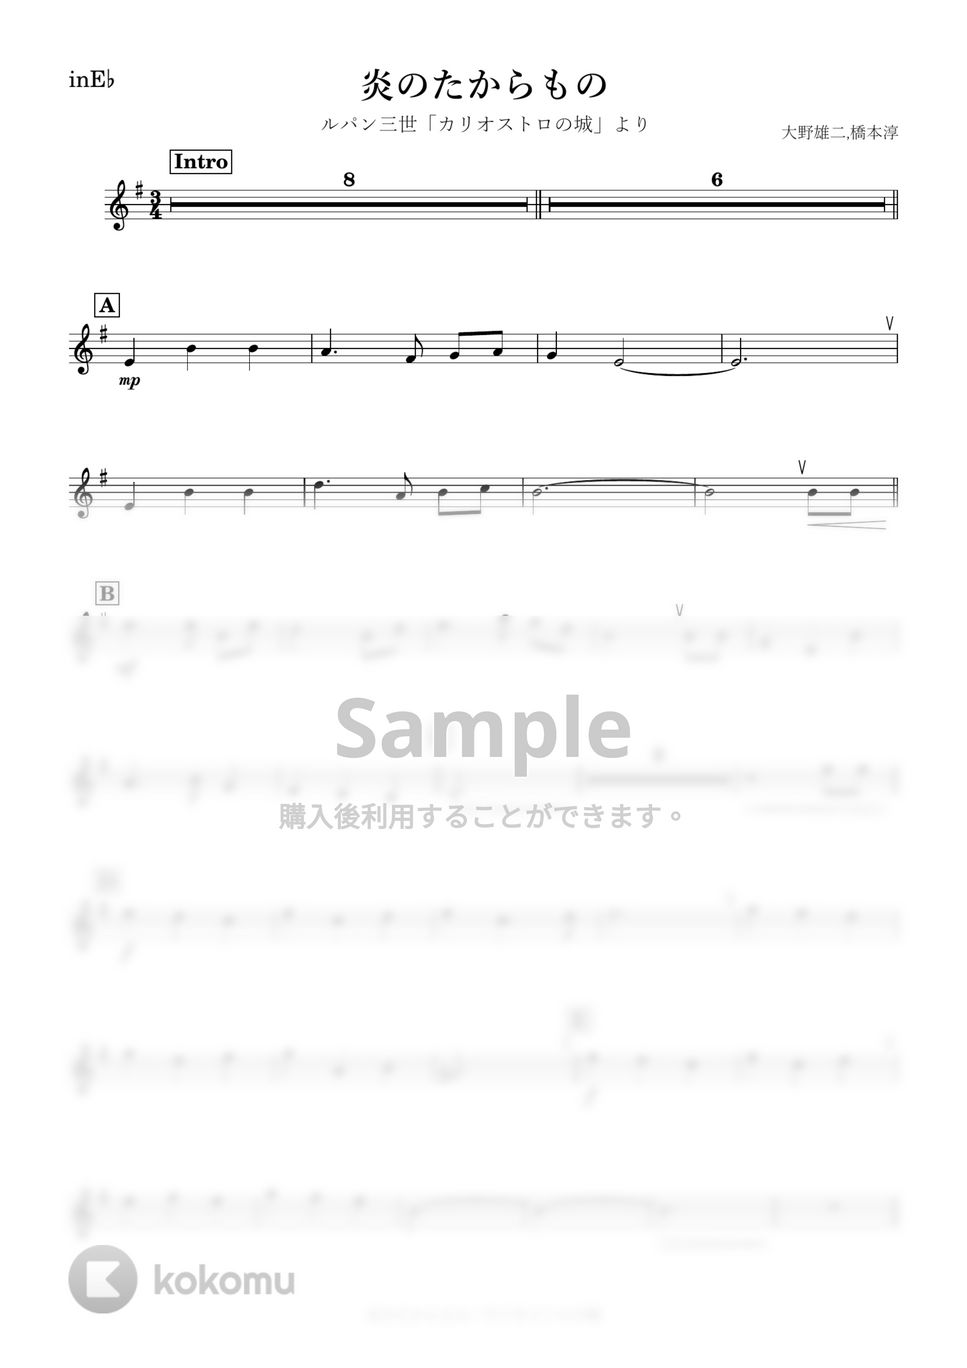 ルパン三世 - 炎のたからもの (E♭) by kanamusic